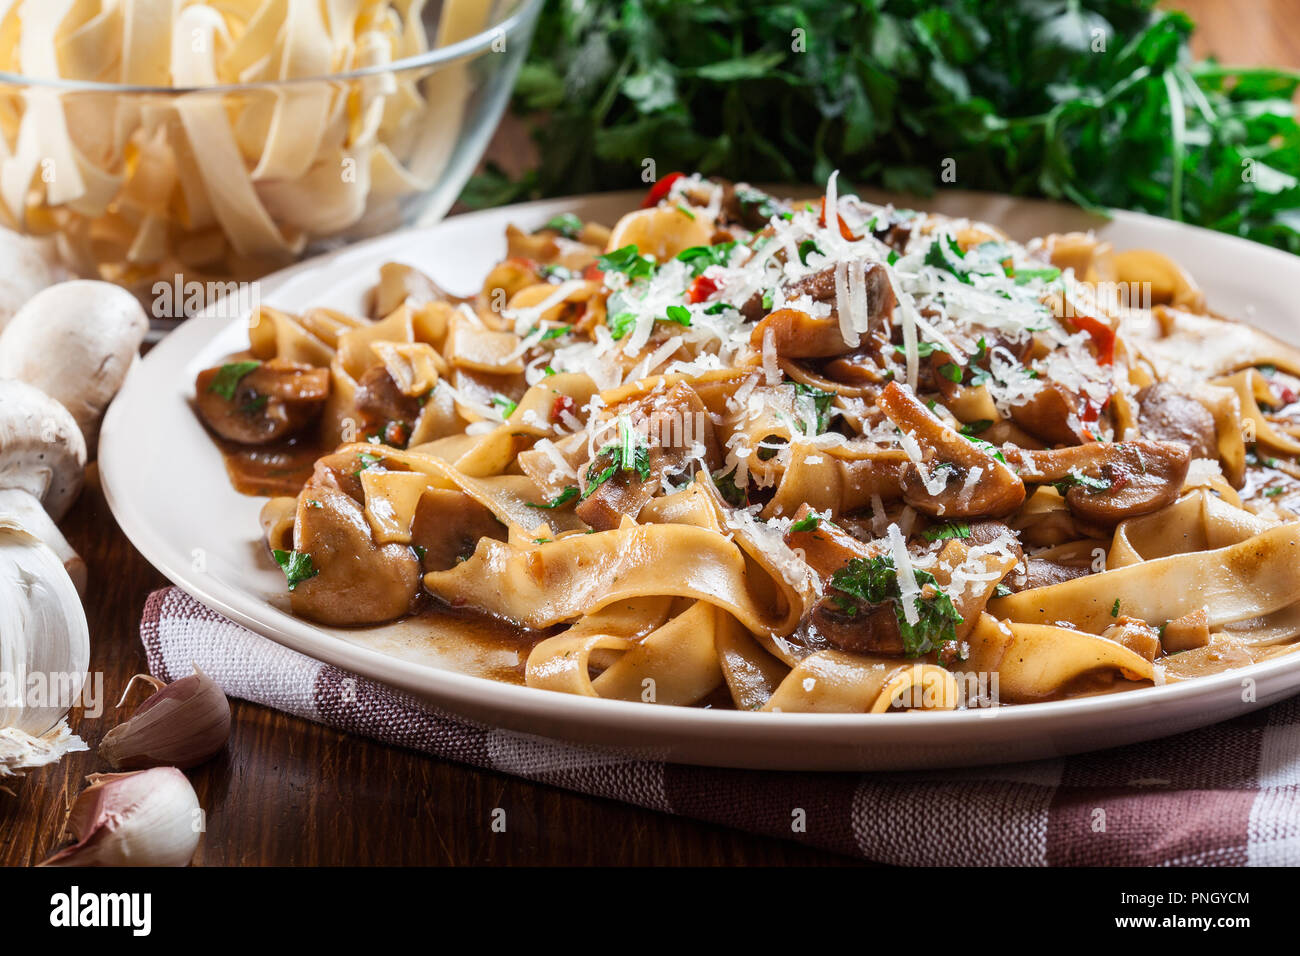 Tagliatelle pasta with champignon in mushroom gravy. Italian dish Stock Photo